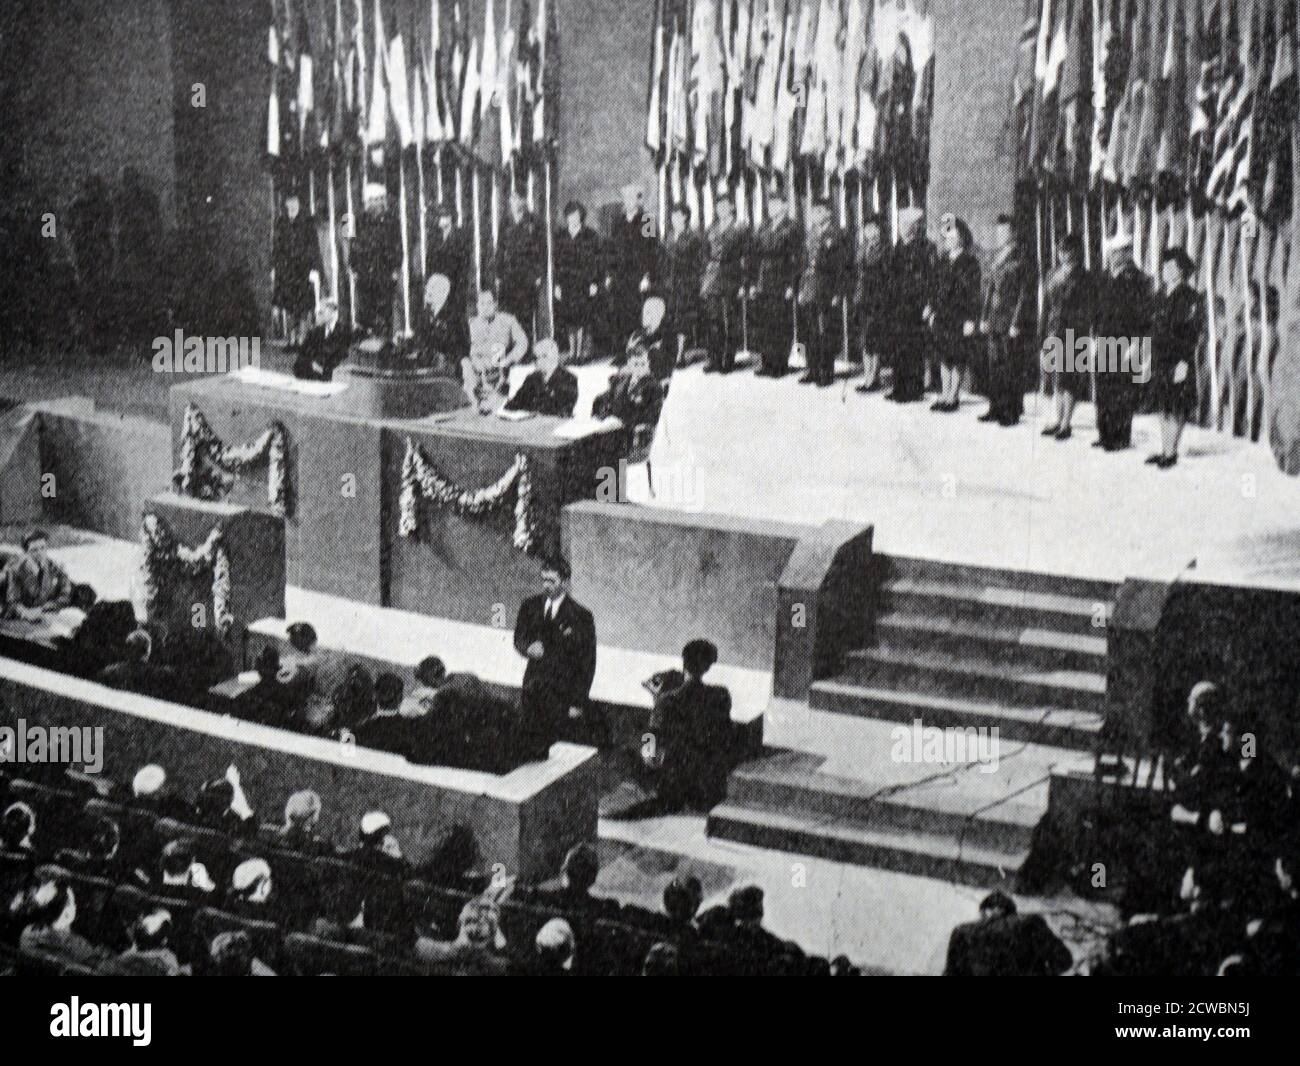 Fotografia in bianco e nero della Conferenza Internazionale di San Francisco, 26 giugno 1945, in cui il Presidente degli Stati Uniti Harry S. Truman (1884-1972) annuncia la chiusura della prima sessione delle Nazioni Unite. Foto Stock